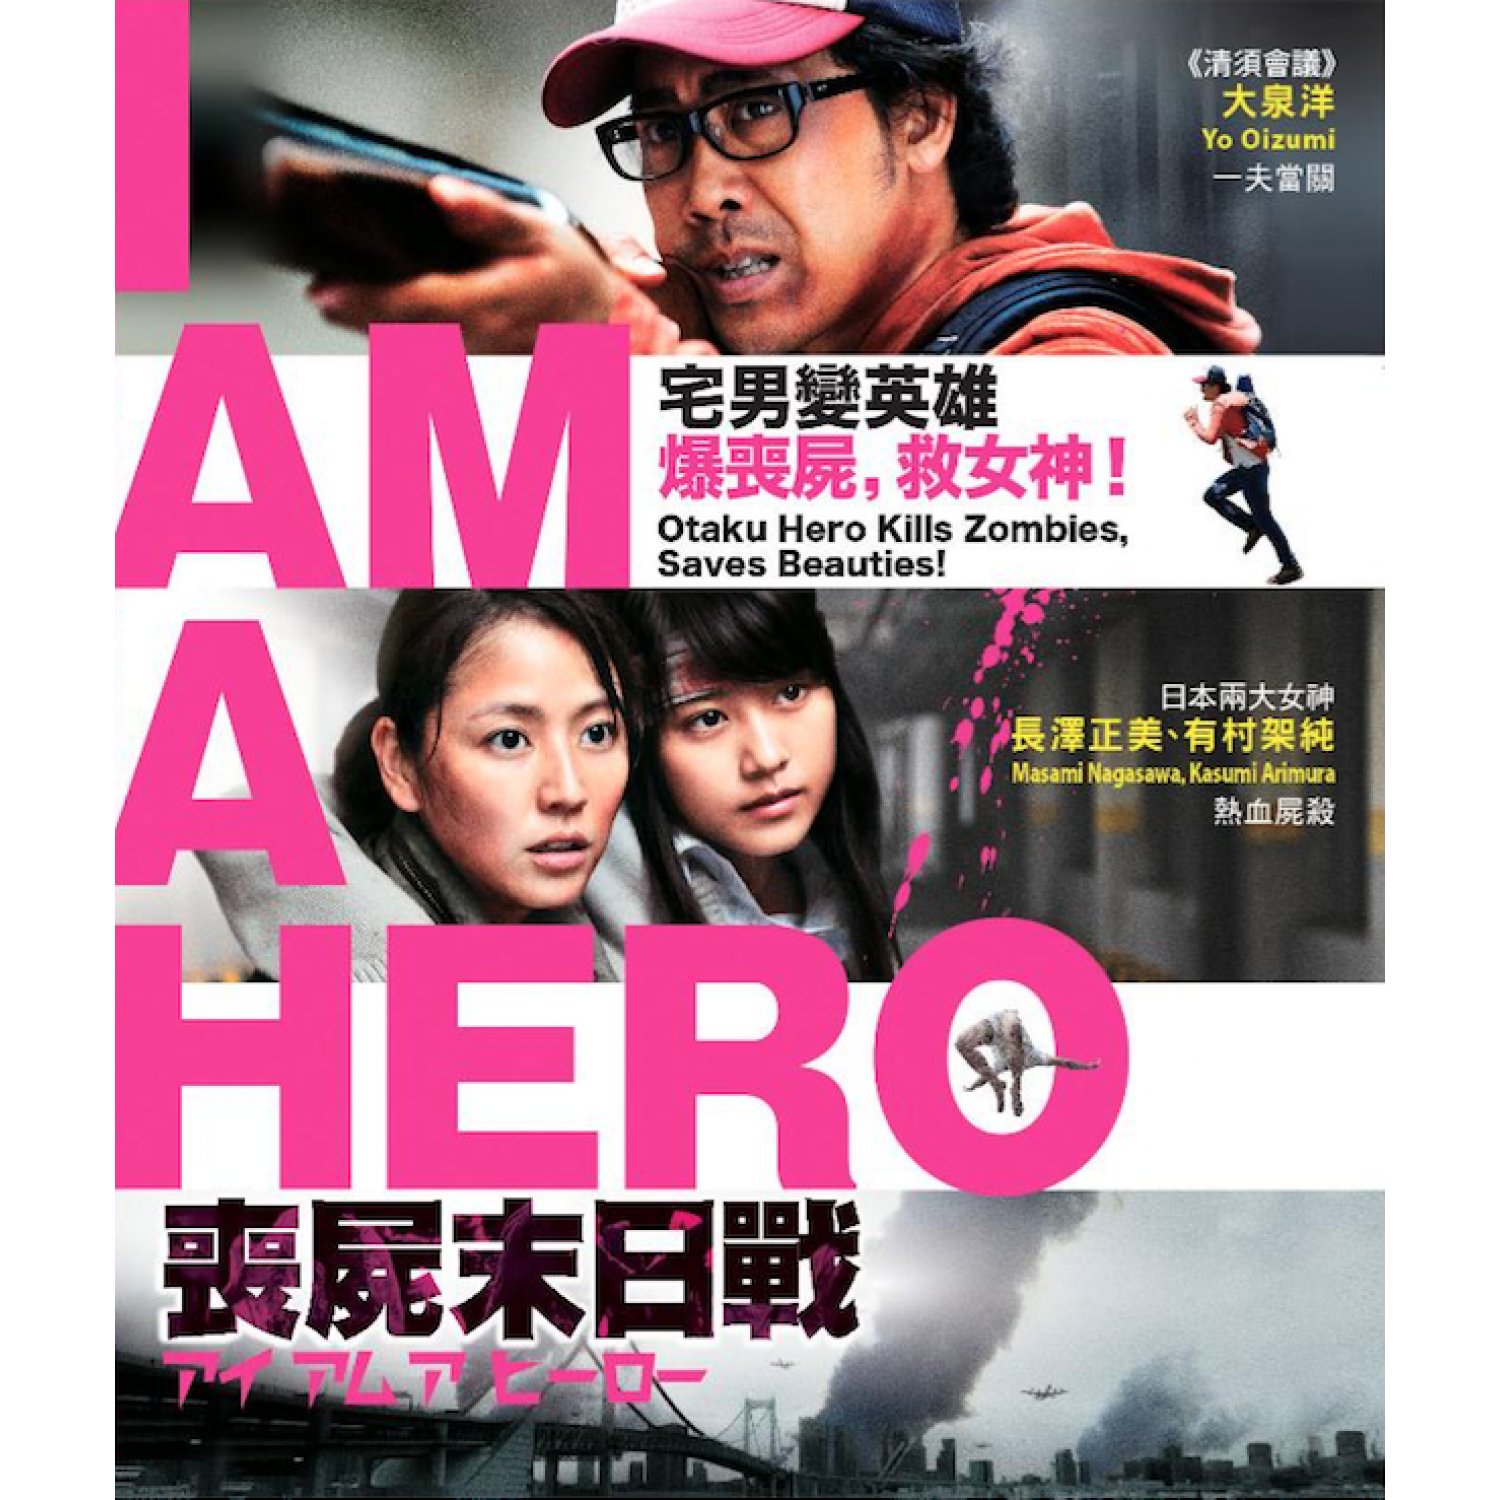 I Am A Hero (2015) ข้าคือฮีโร่